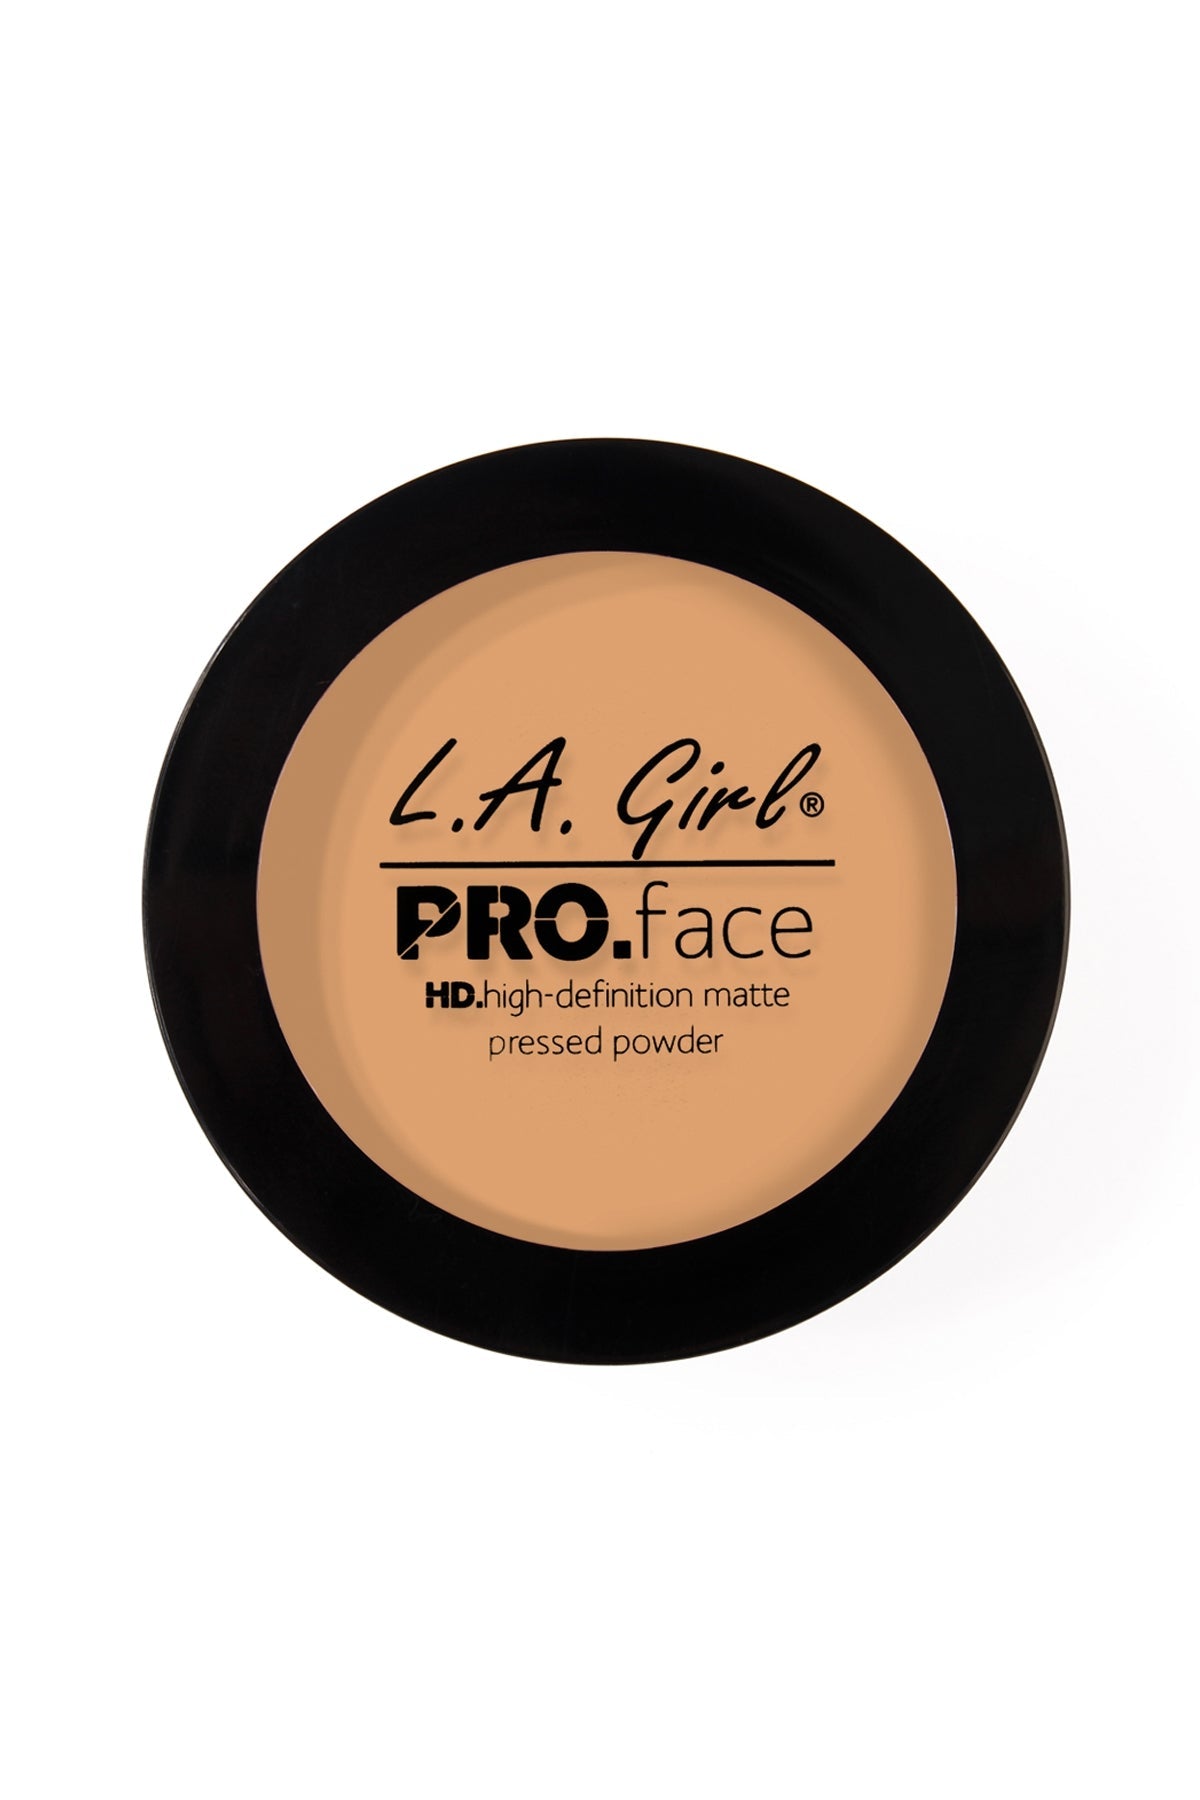 L.A. GIRL PRO.face Powder CLASSIC TAN/3PCS